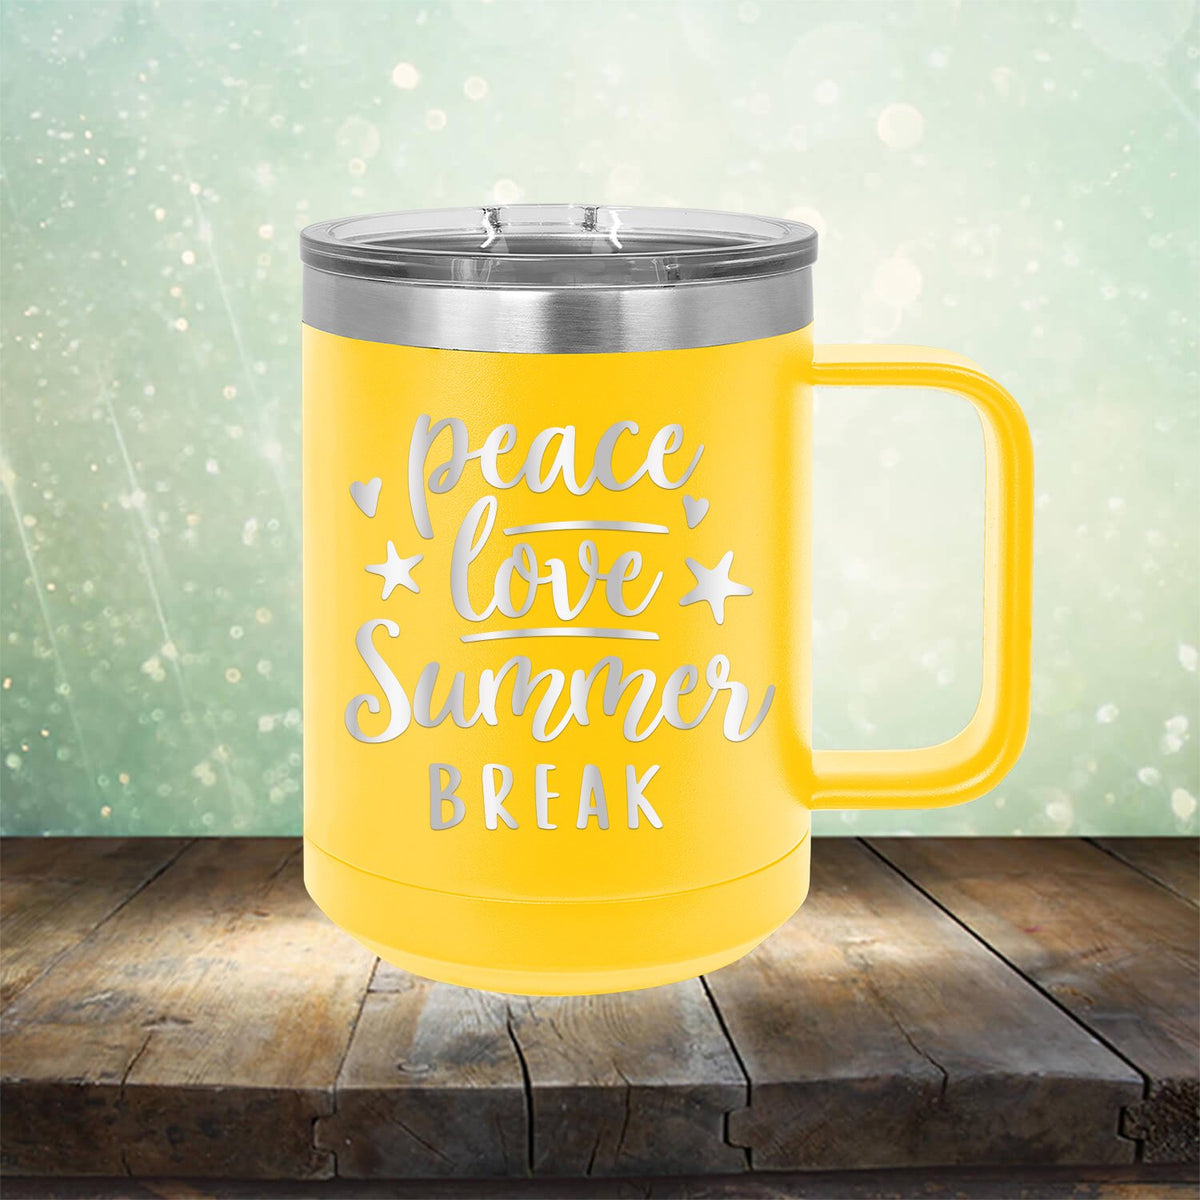 Peace Love Summer Break - Laser Etched Tumbler Mug